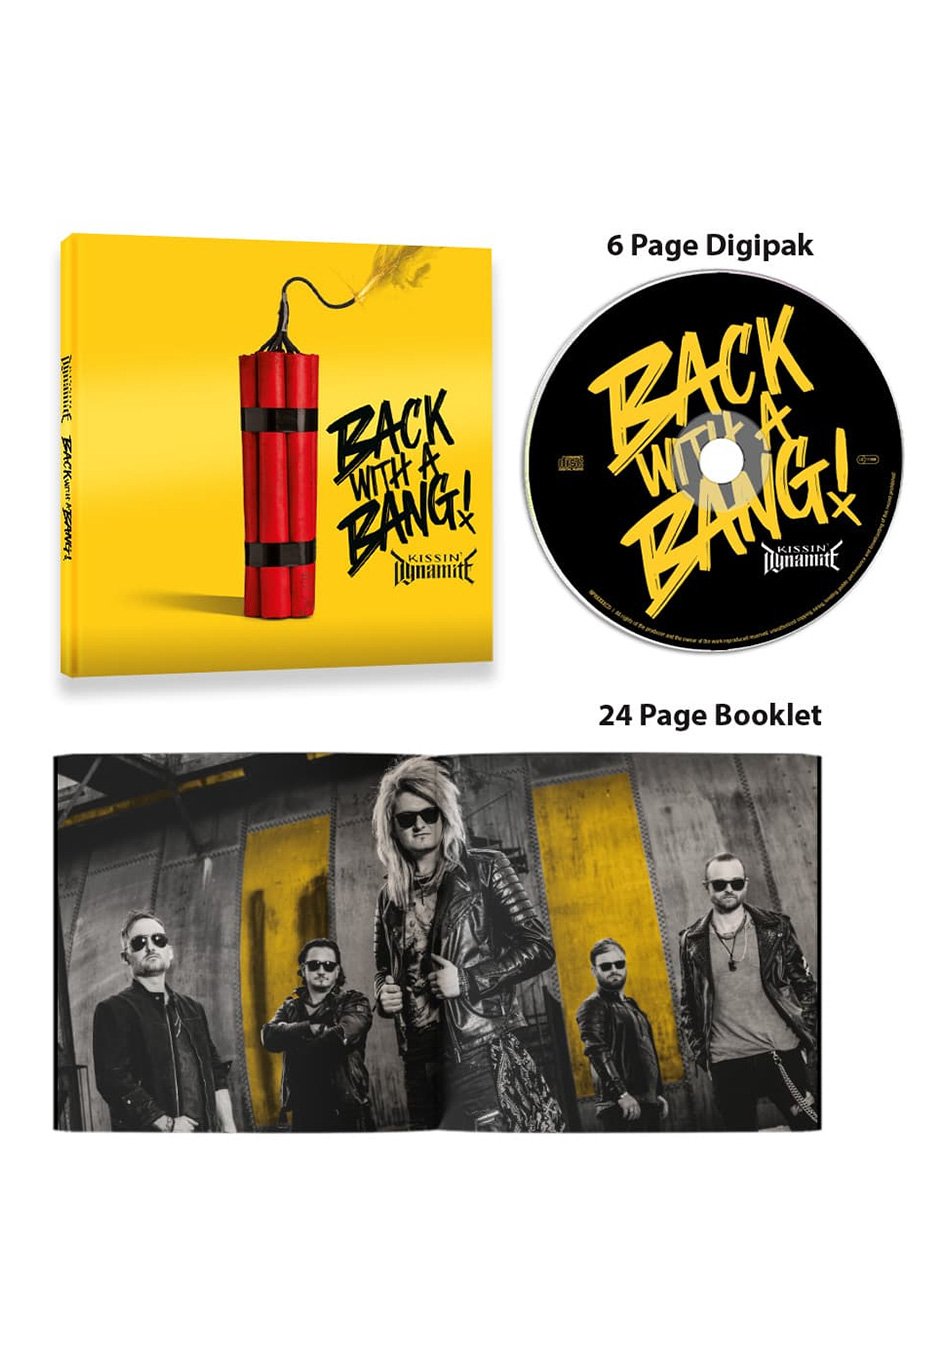 Kissin' Dynamite - Back With A Bang - Digipak CD